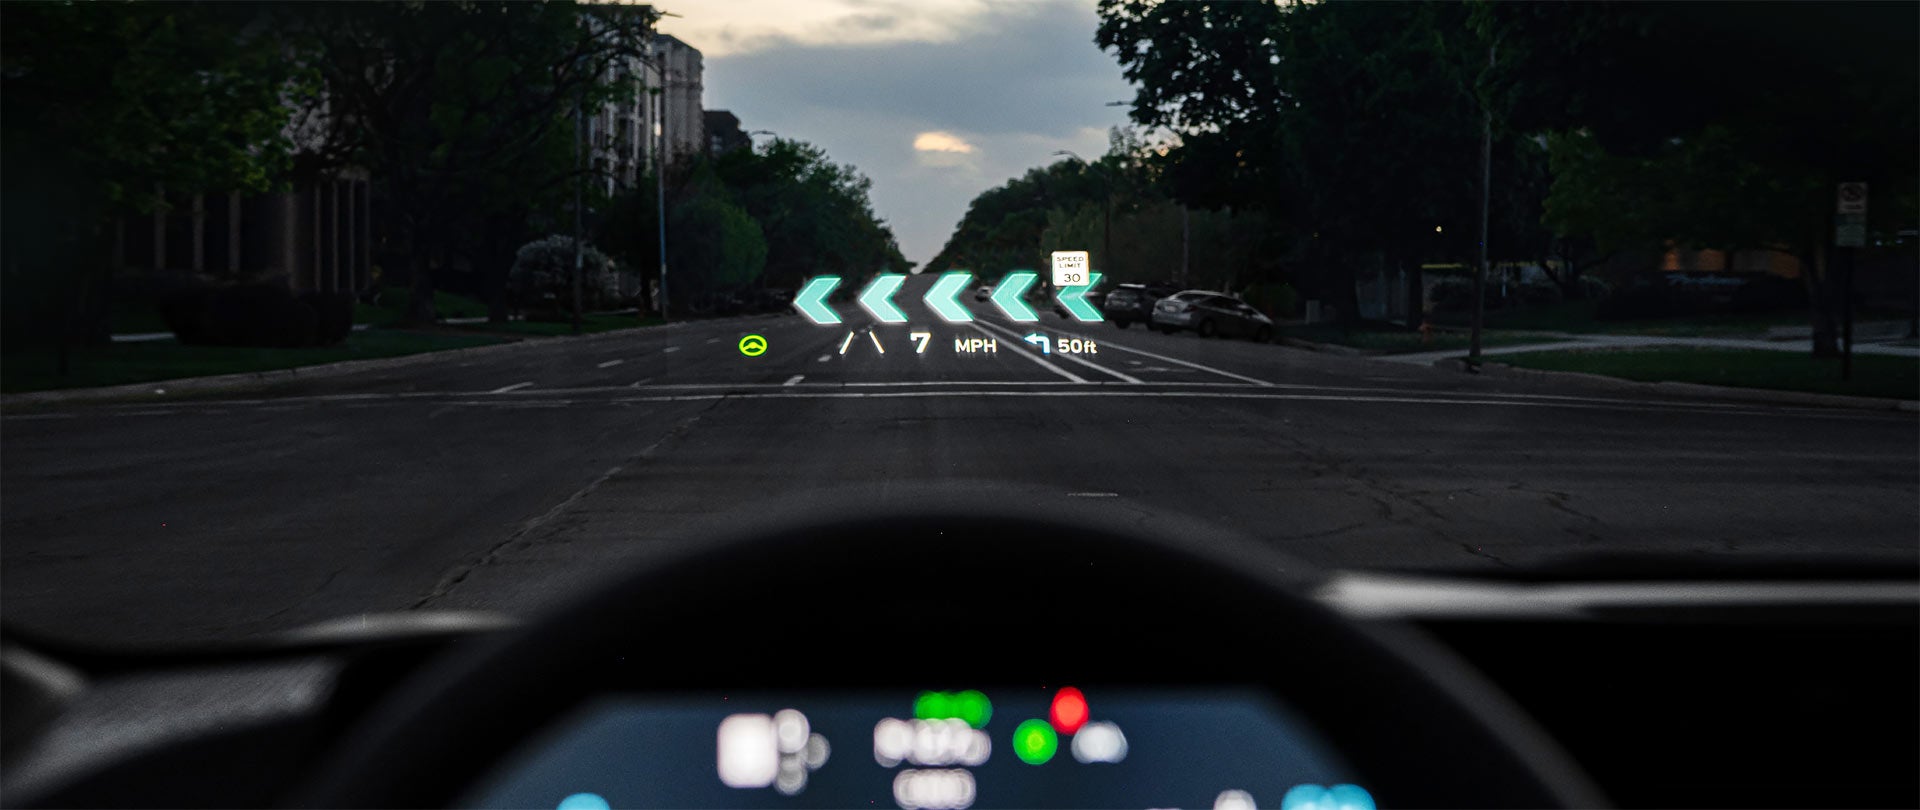 2022 Kia EV6 Augmented Reality Head-Up Display | Kia Of Muncie in Muncie IN